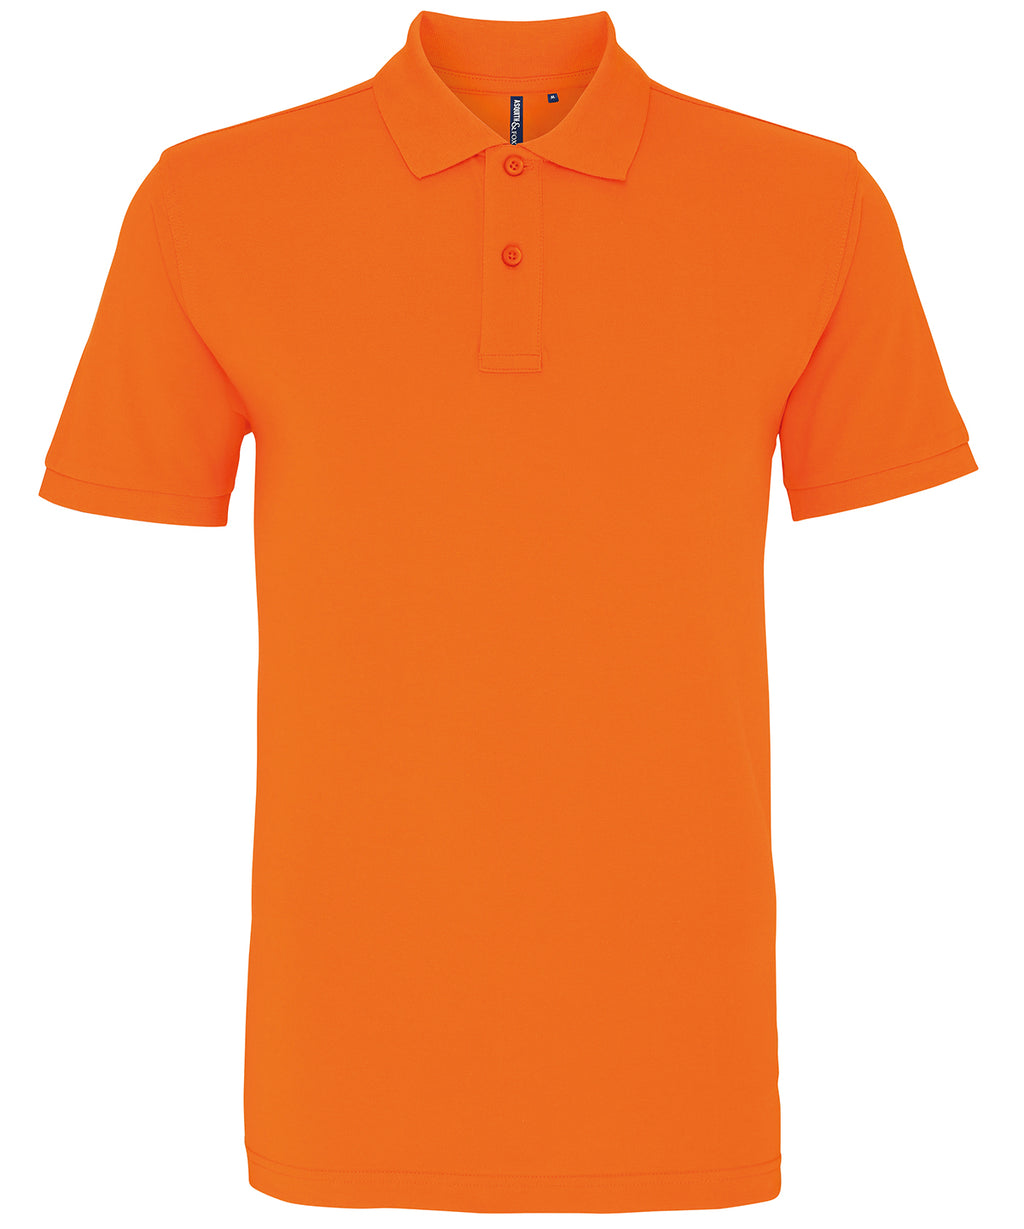 Mens Plain Short Sleeve Polo Shirt - Orange